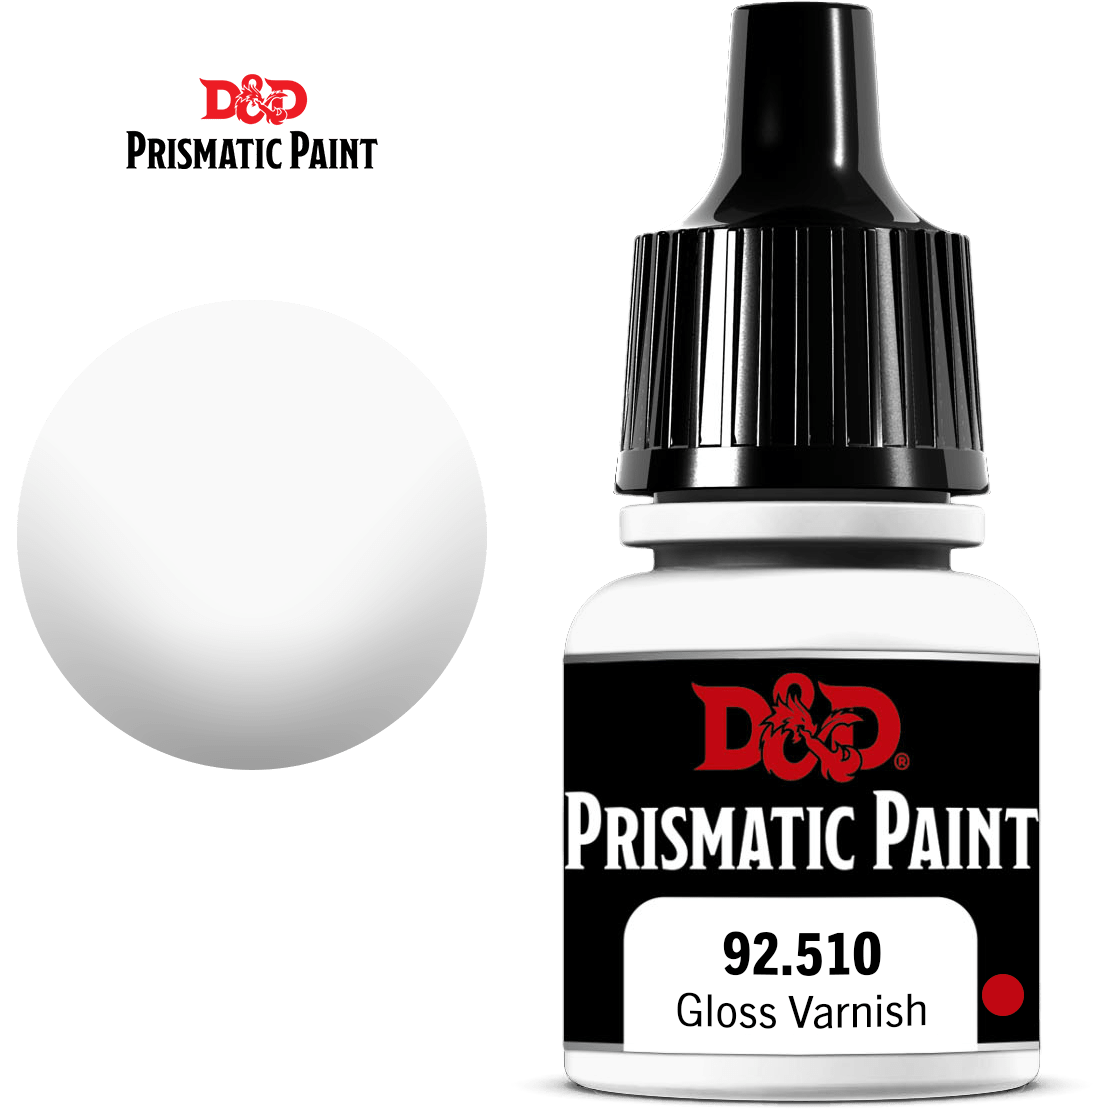 D&D Prismatic Paint - Gloss Varnish